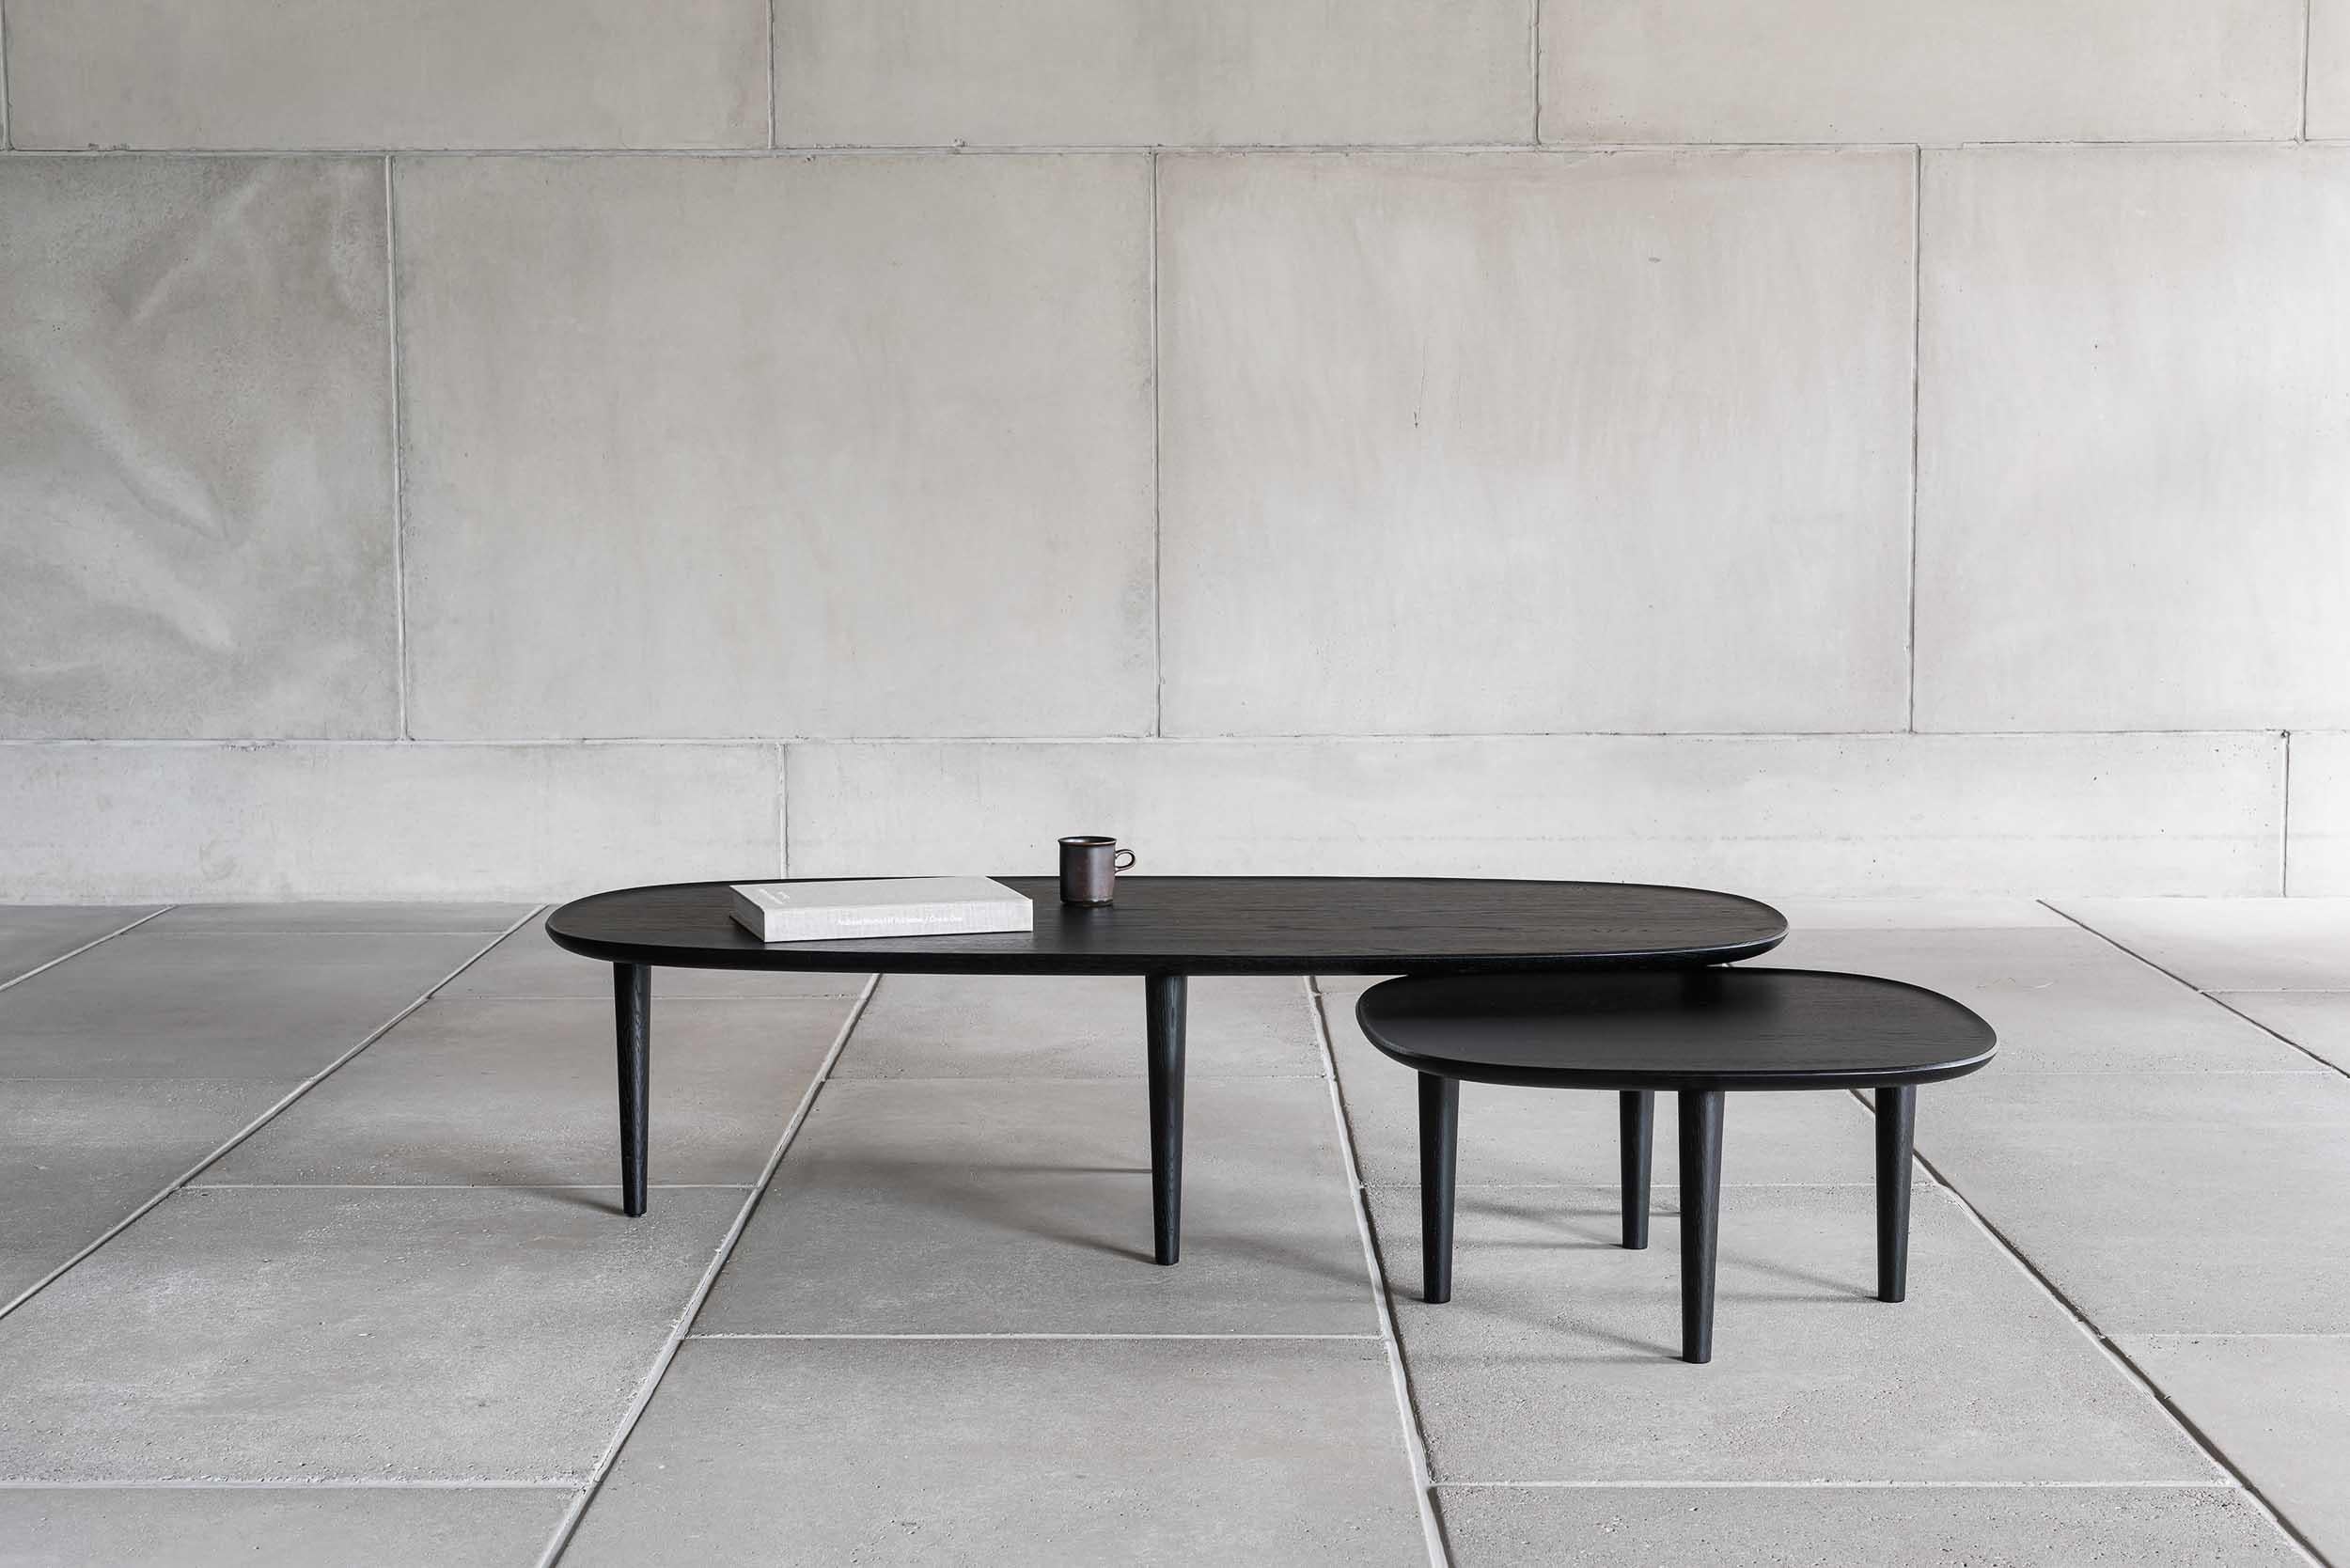 Fiori Table 140 designed by Antrei Hartikainen x Poiat
Fiori Collection 2017

Available finishes: 
- Oak
- Dark oak 
- Black oak

Model shown in picture : 
- H. 35 x 140 x 65 cm
- Oak

Designed by Poiat Studio in collaboration with the